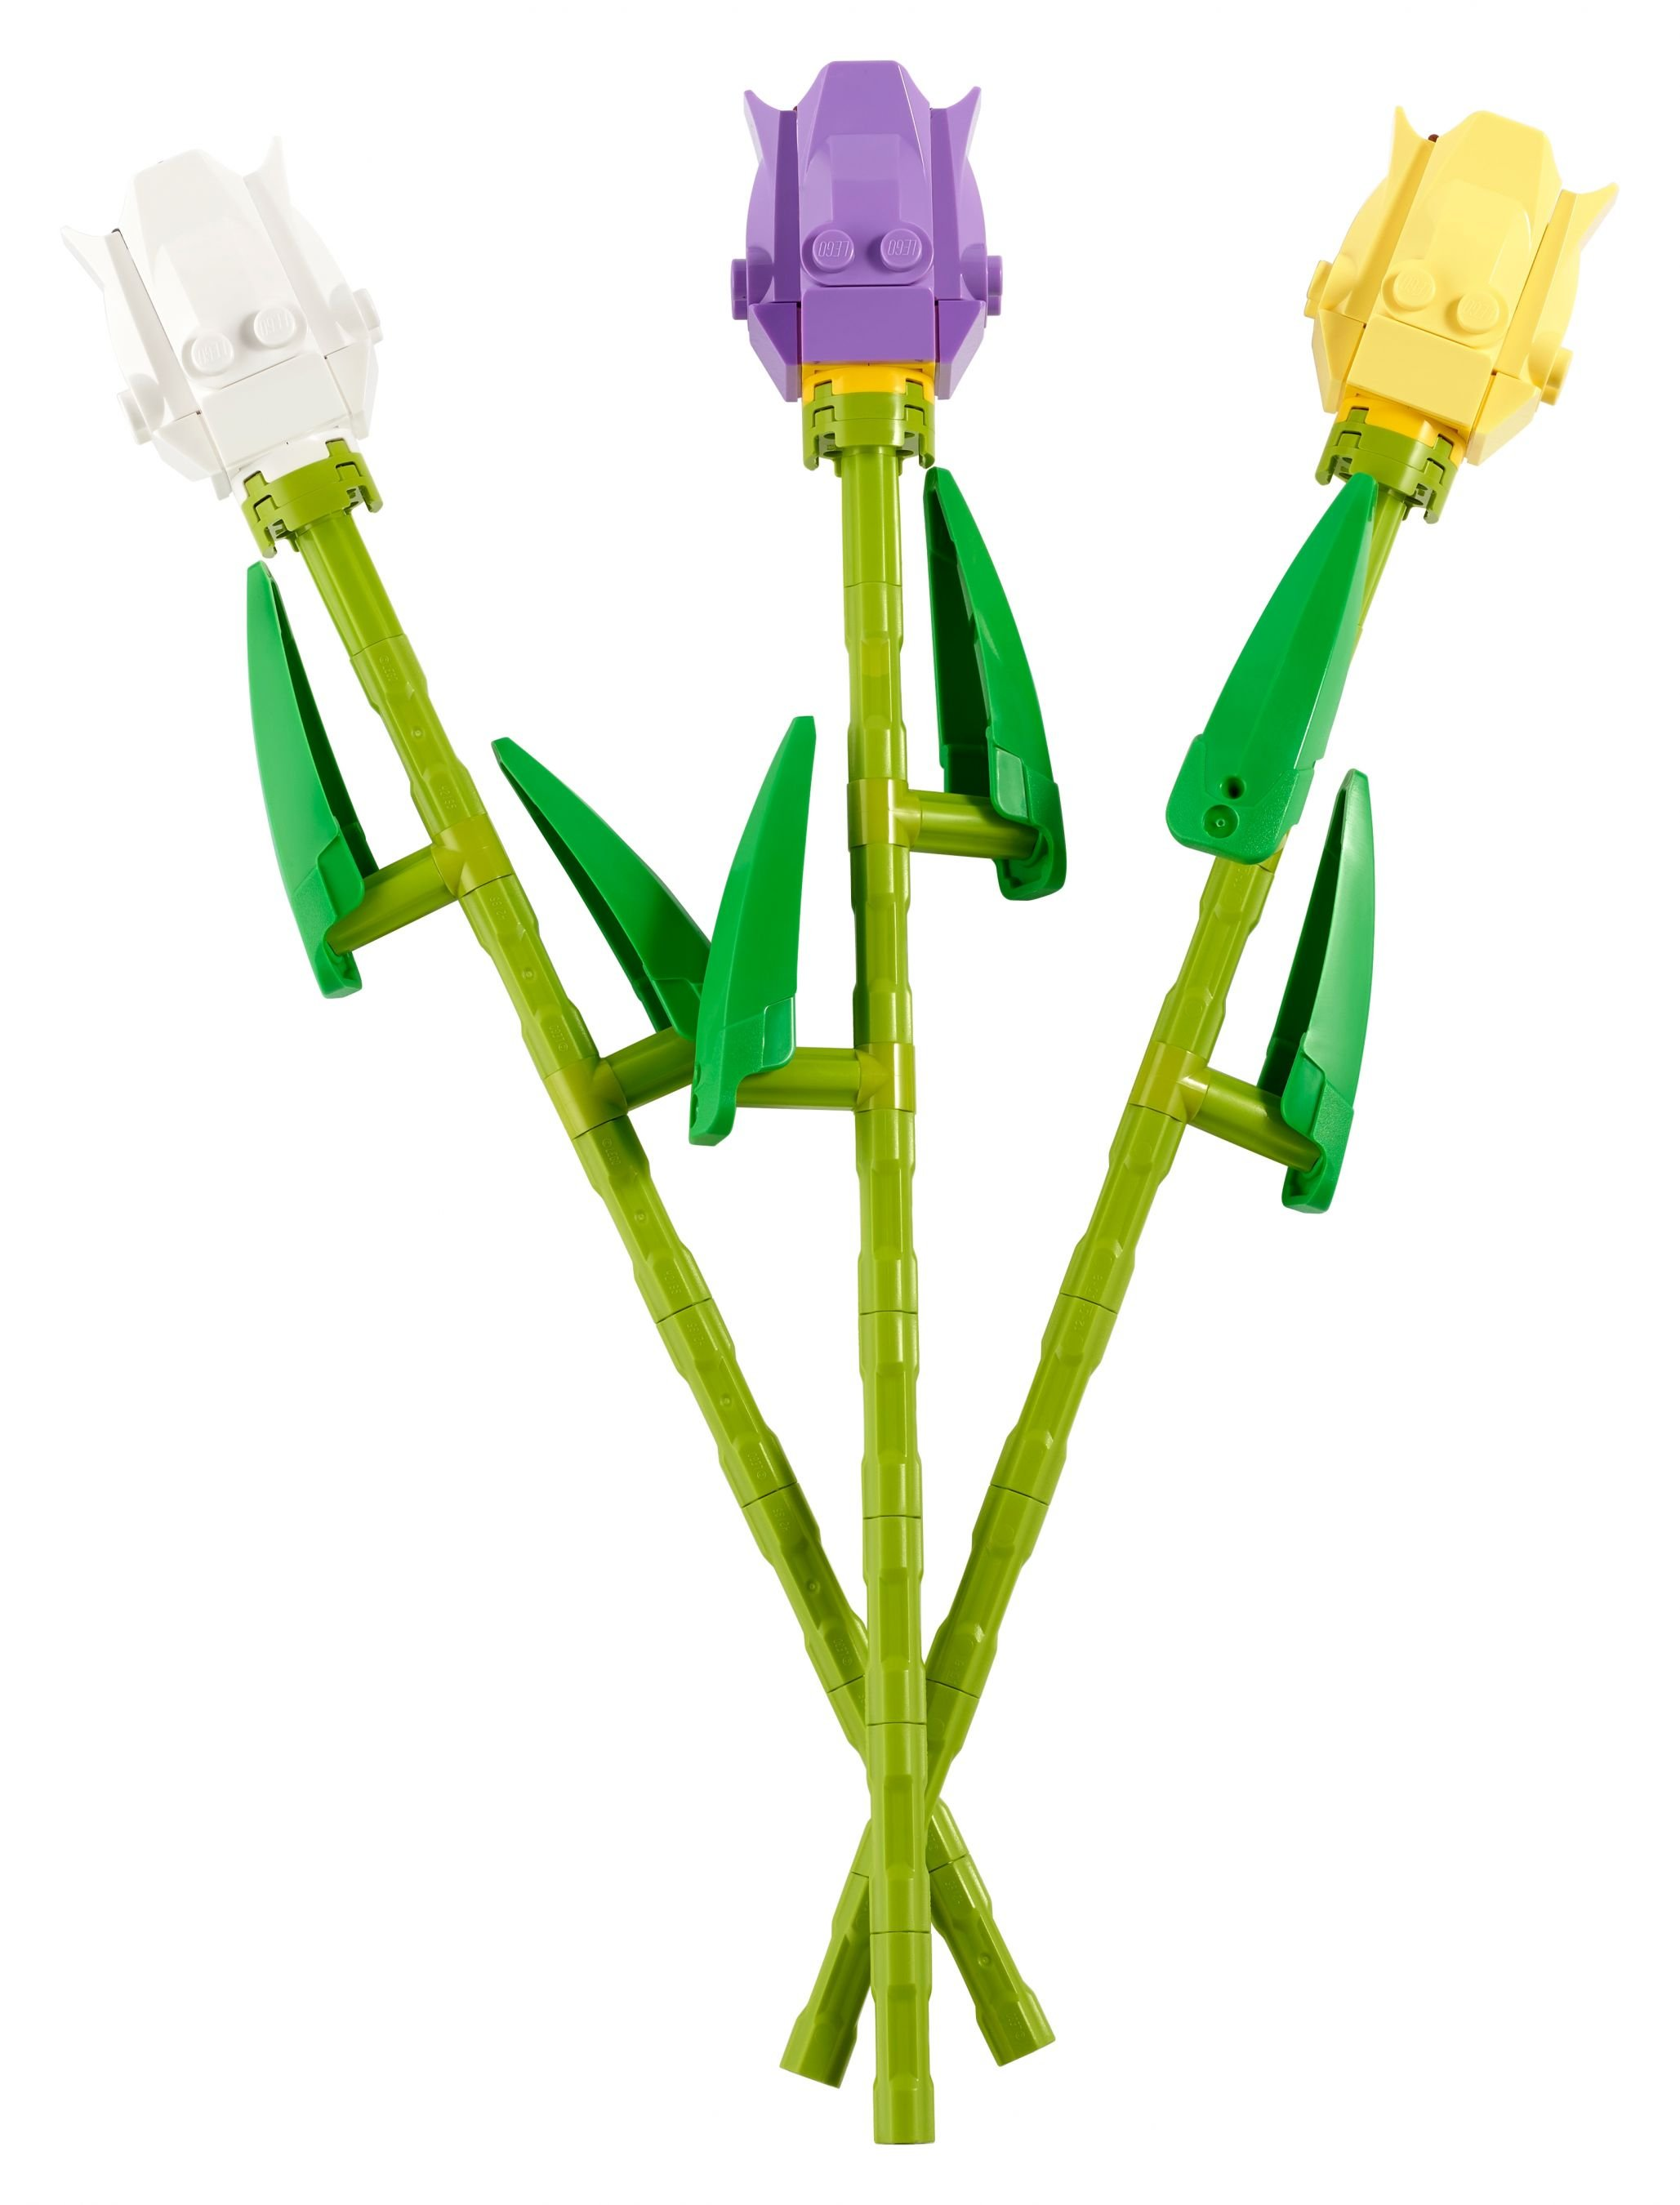 LEGO Creator Tulpen Bausatz 40461